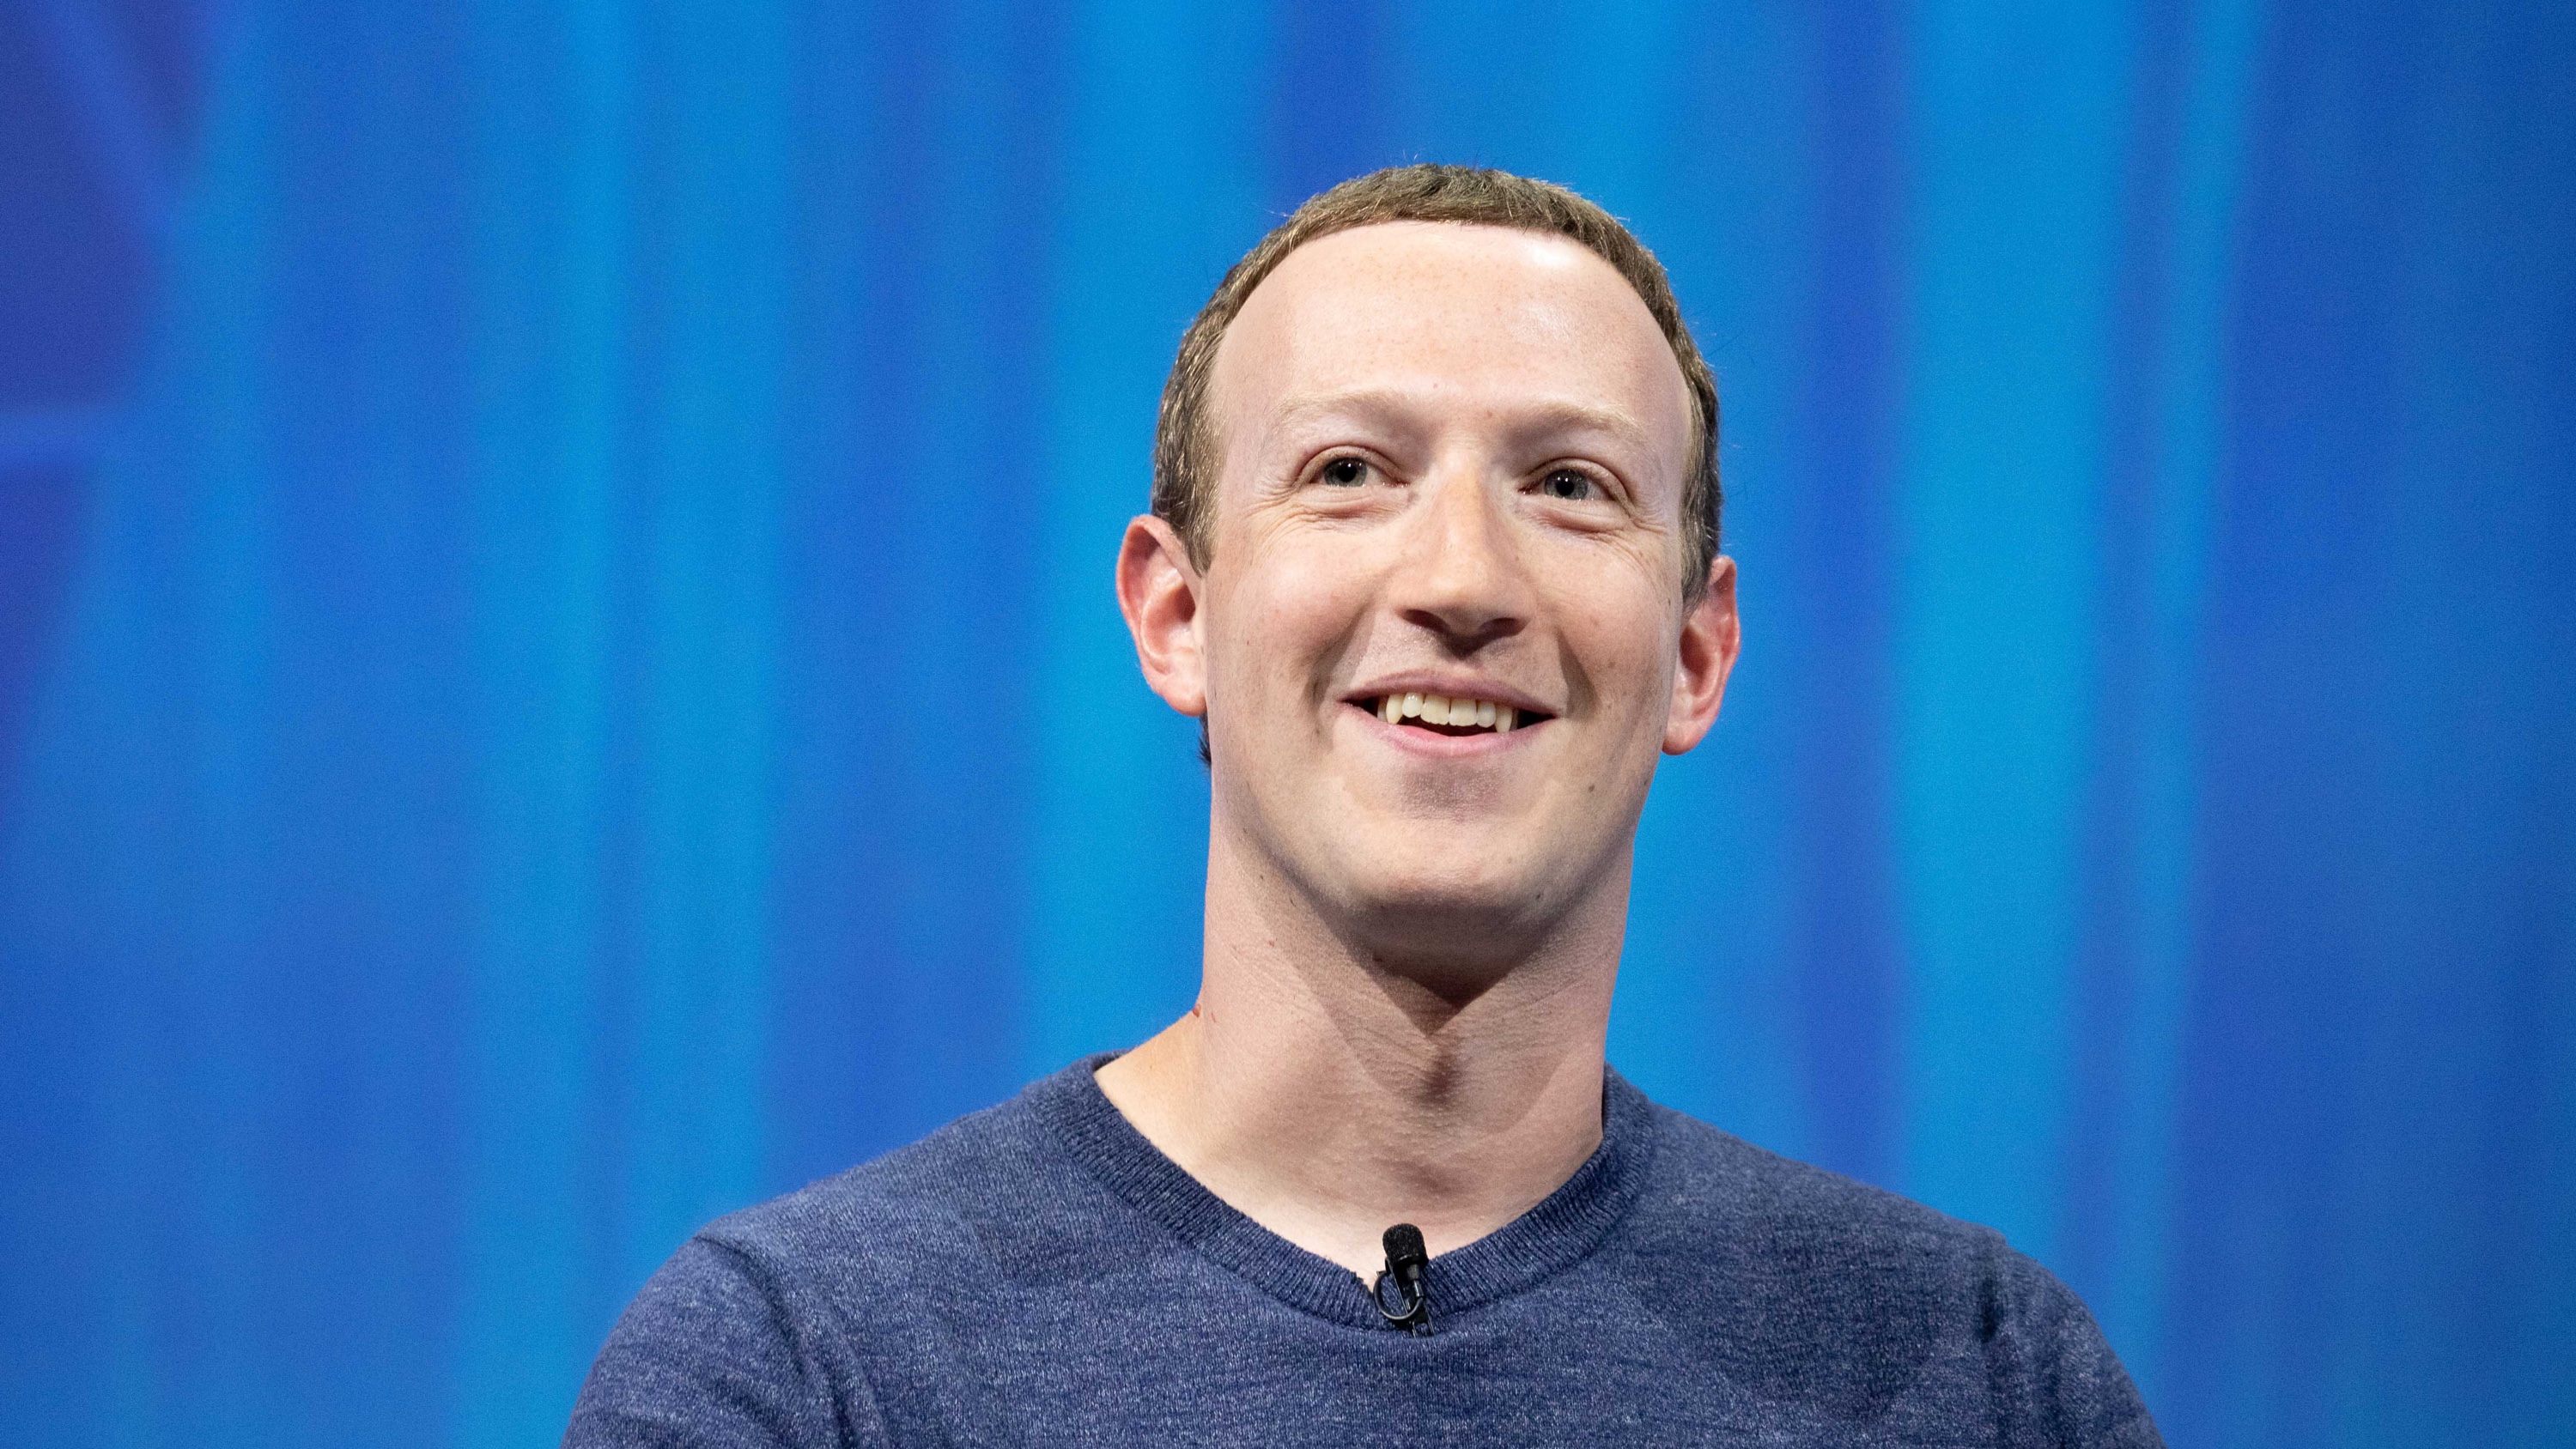 أخبار 19 مارس 2021
Facebook-CEO Zuckerberg سعيد فجأة مع Appleسياسة الخصوصية الجديدة